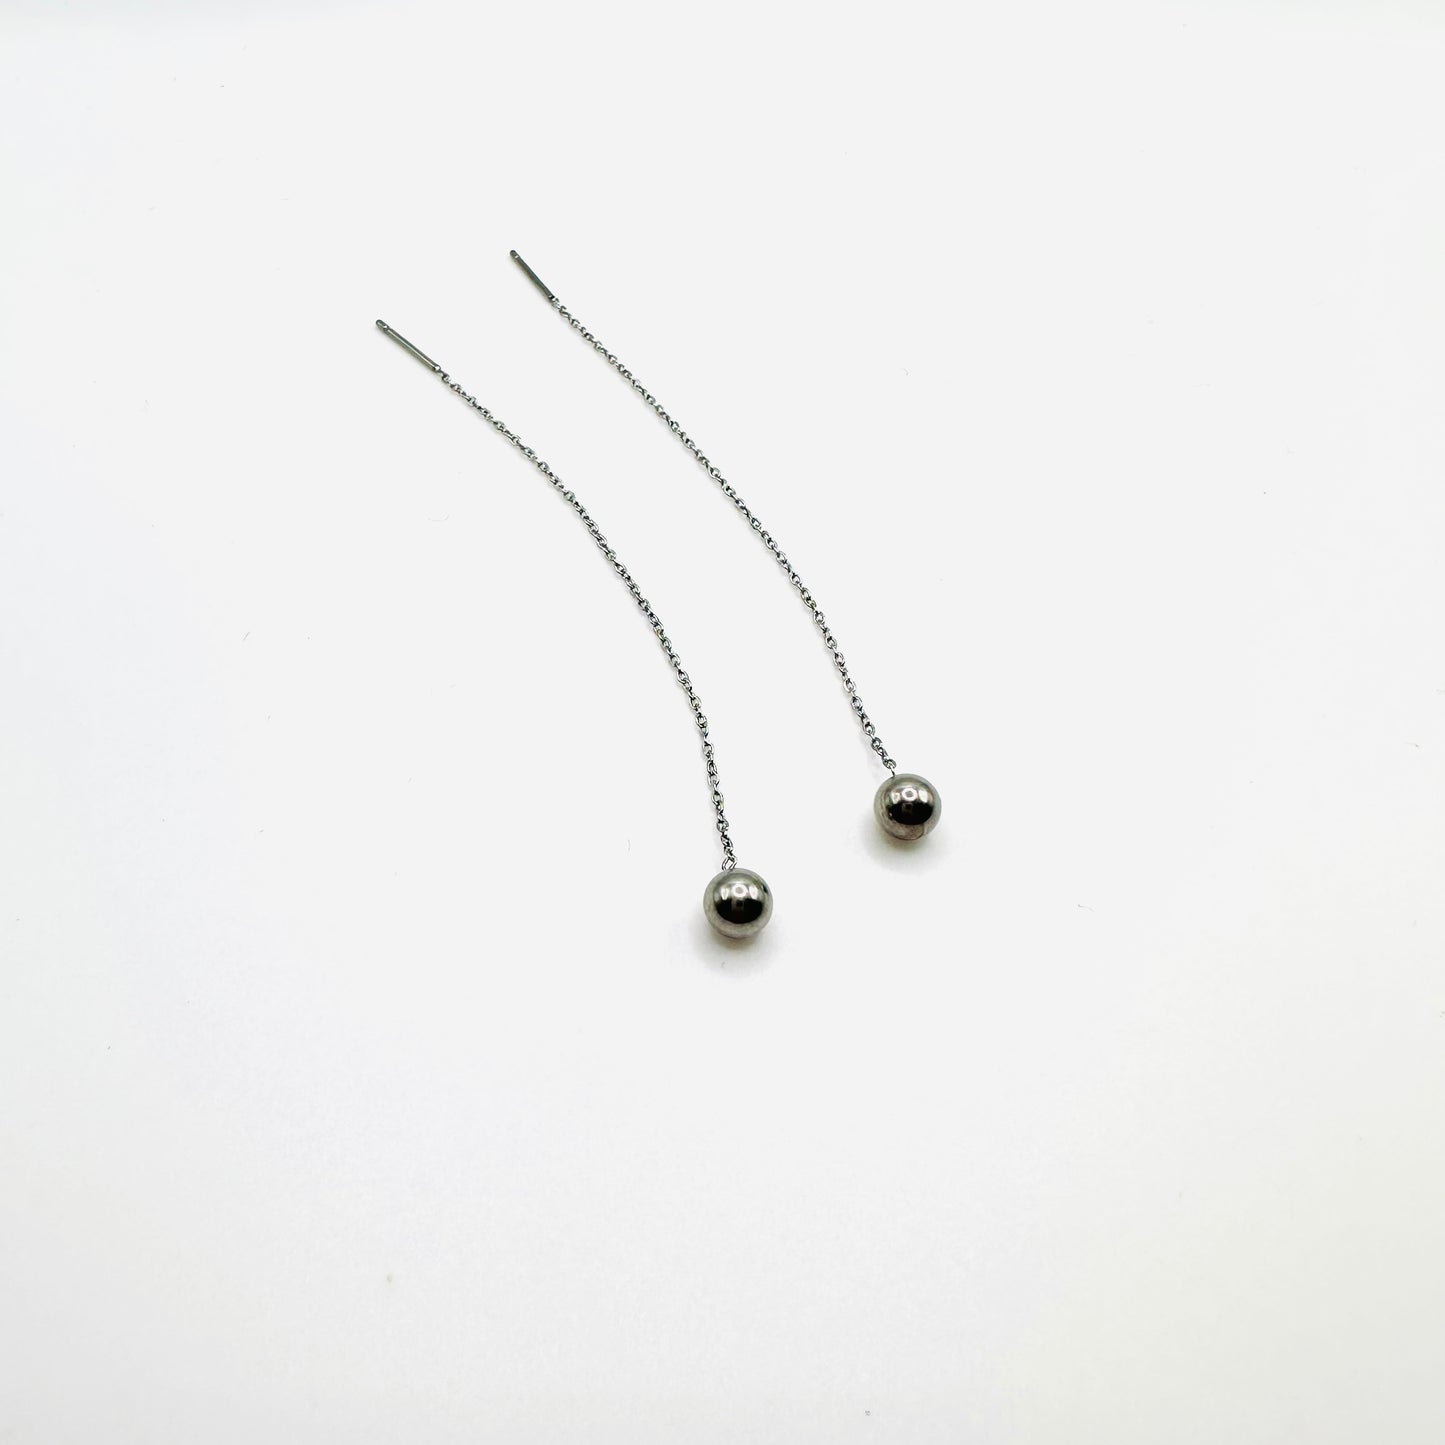 Minimalist ball end ear thread earrings in Silver